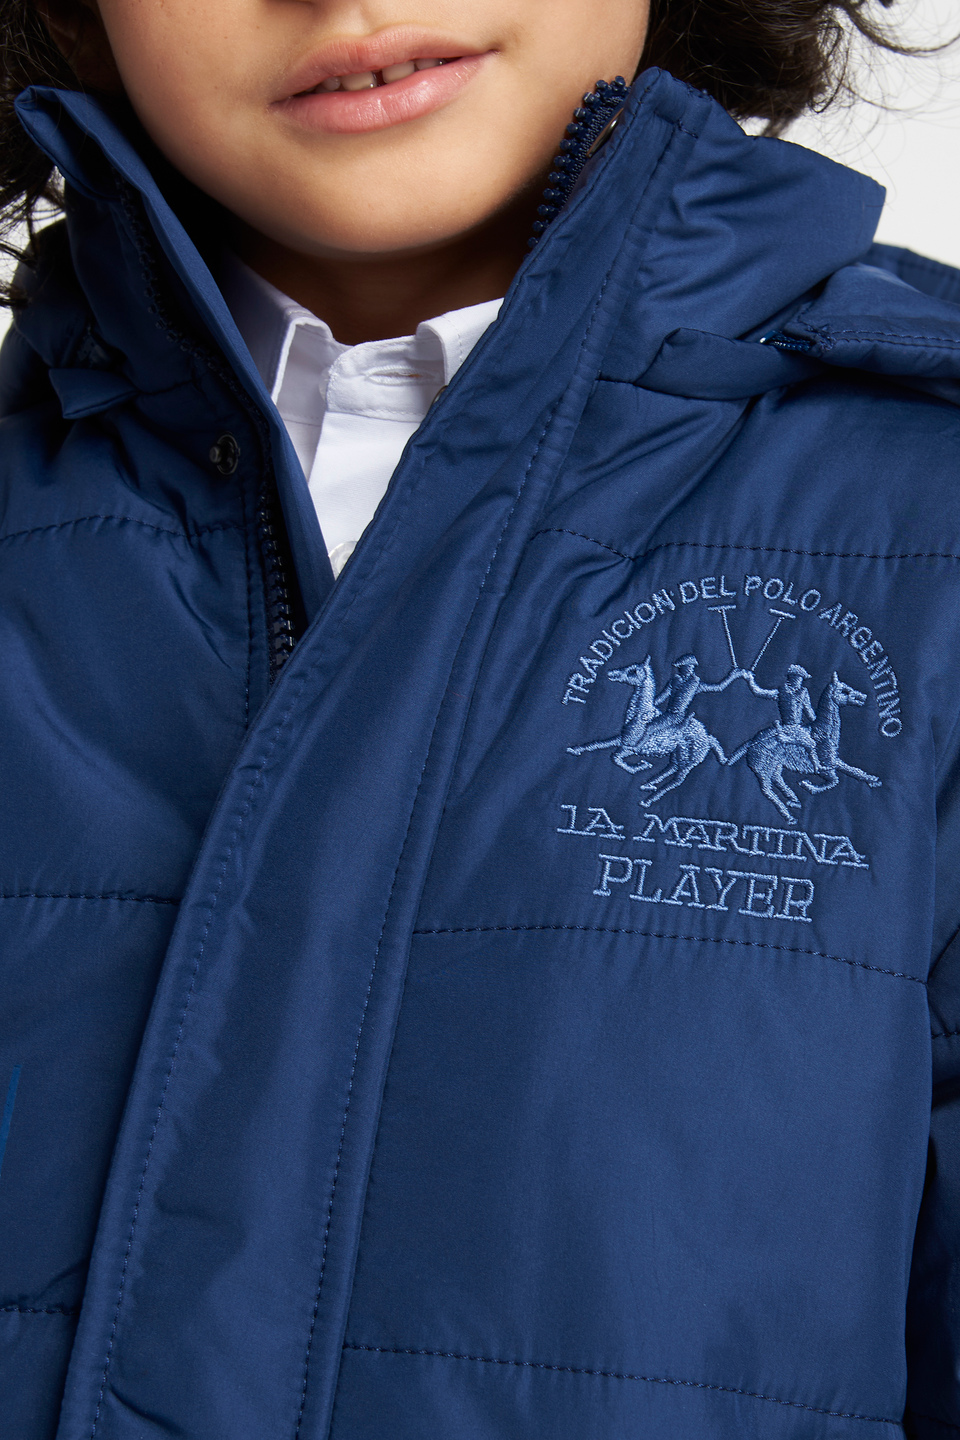 Unifarbene Jacke mit Kapuze | La Martina - Official Online Shop